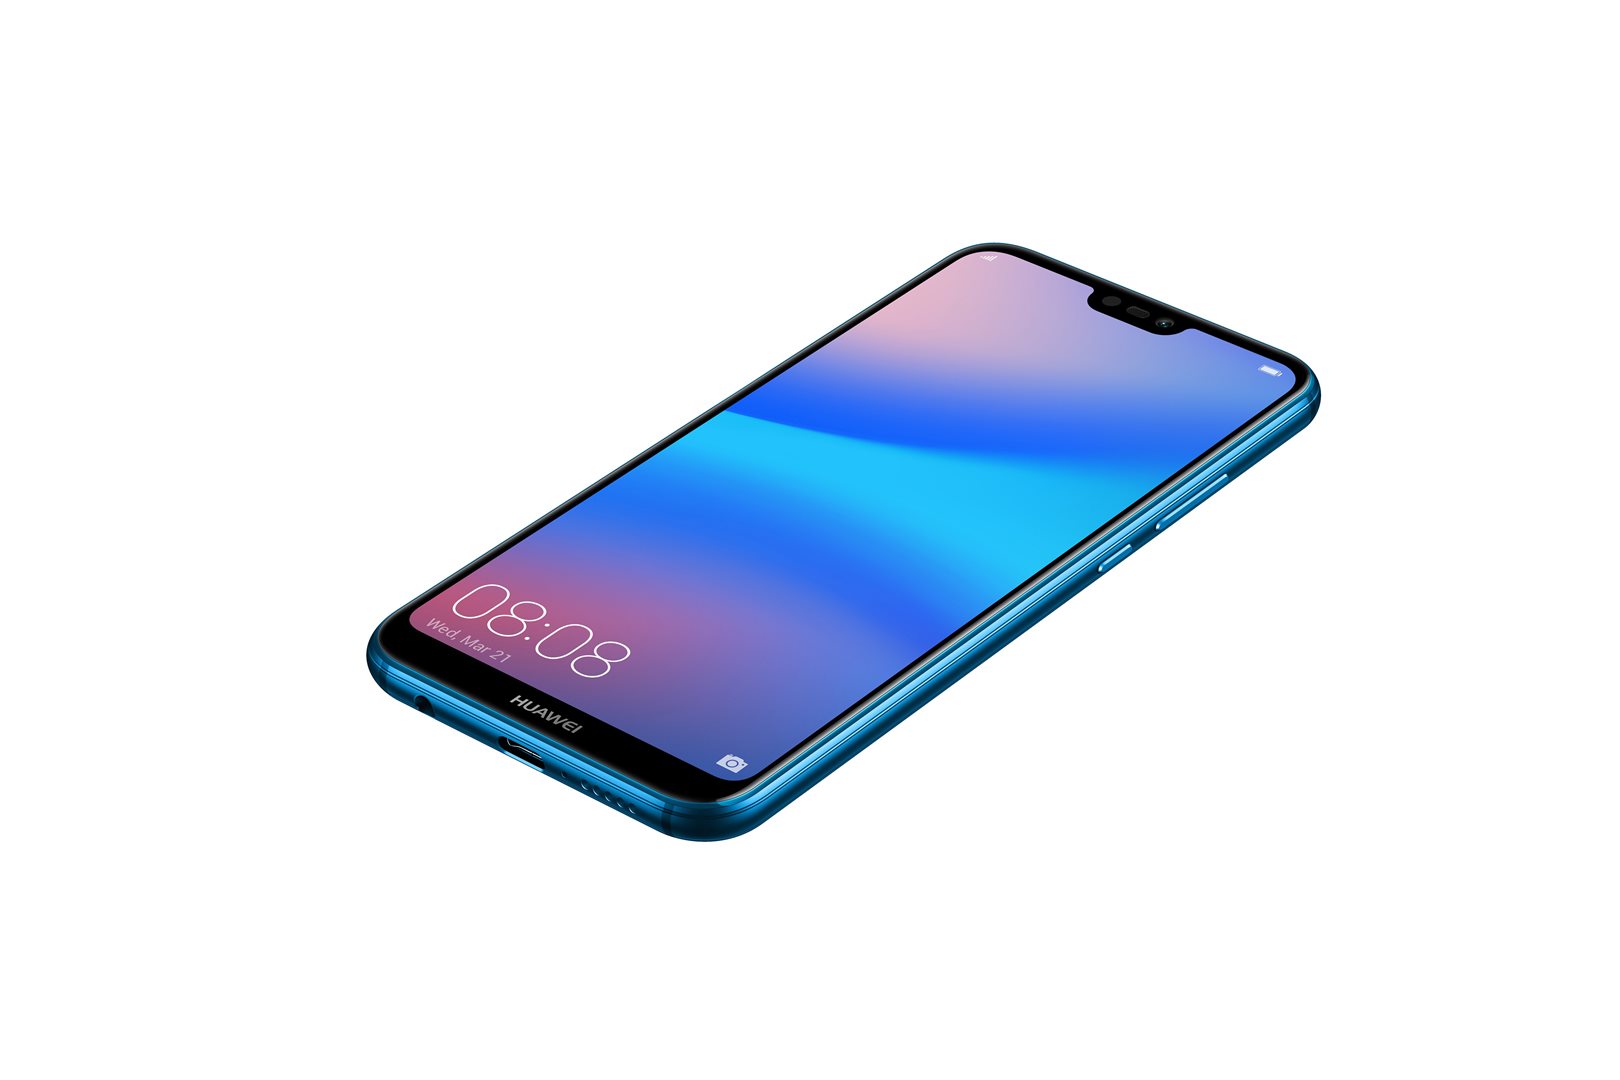 Huawei p20 lite ds klein blue